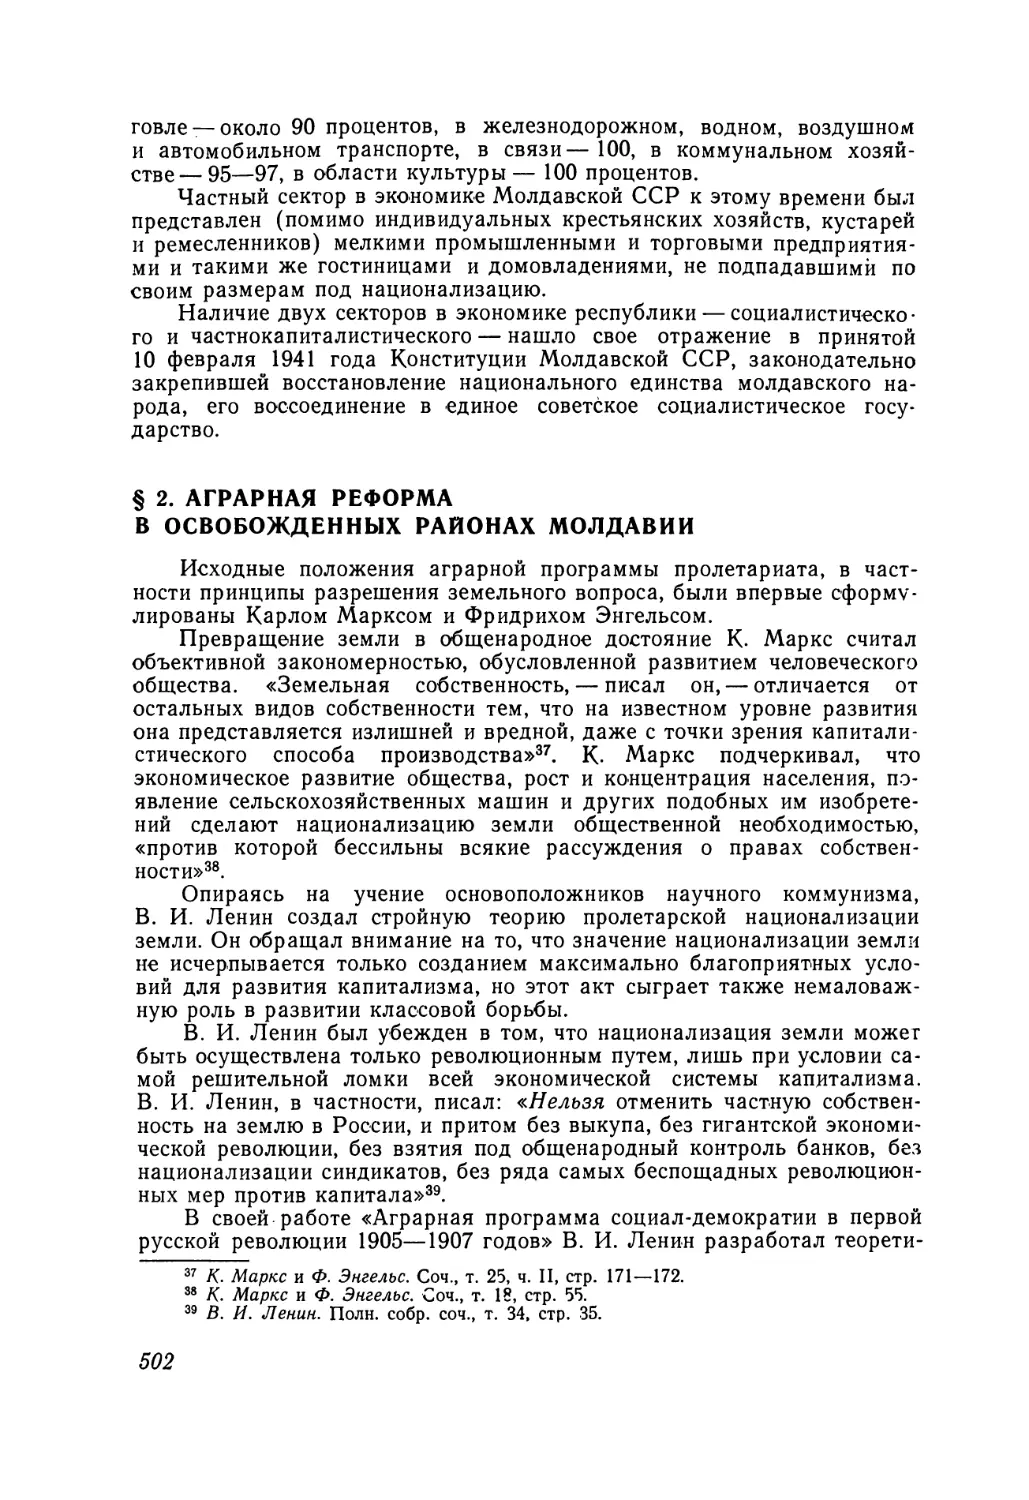 § 2. Аграрная реформа в освобожденных районах Молдавии